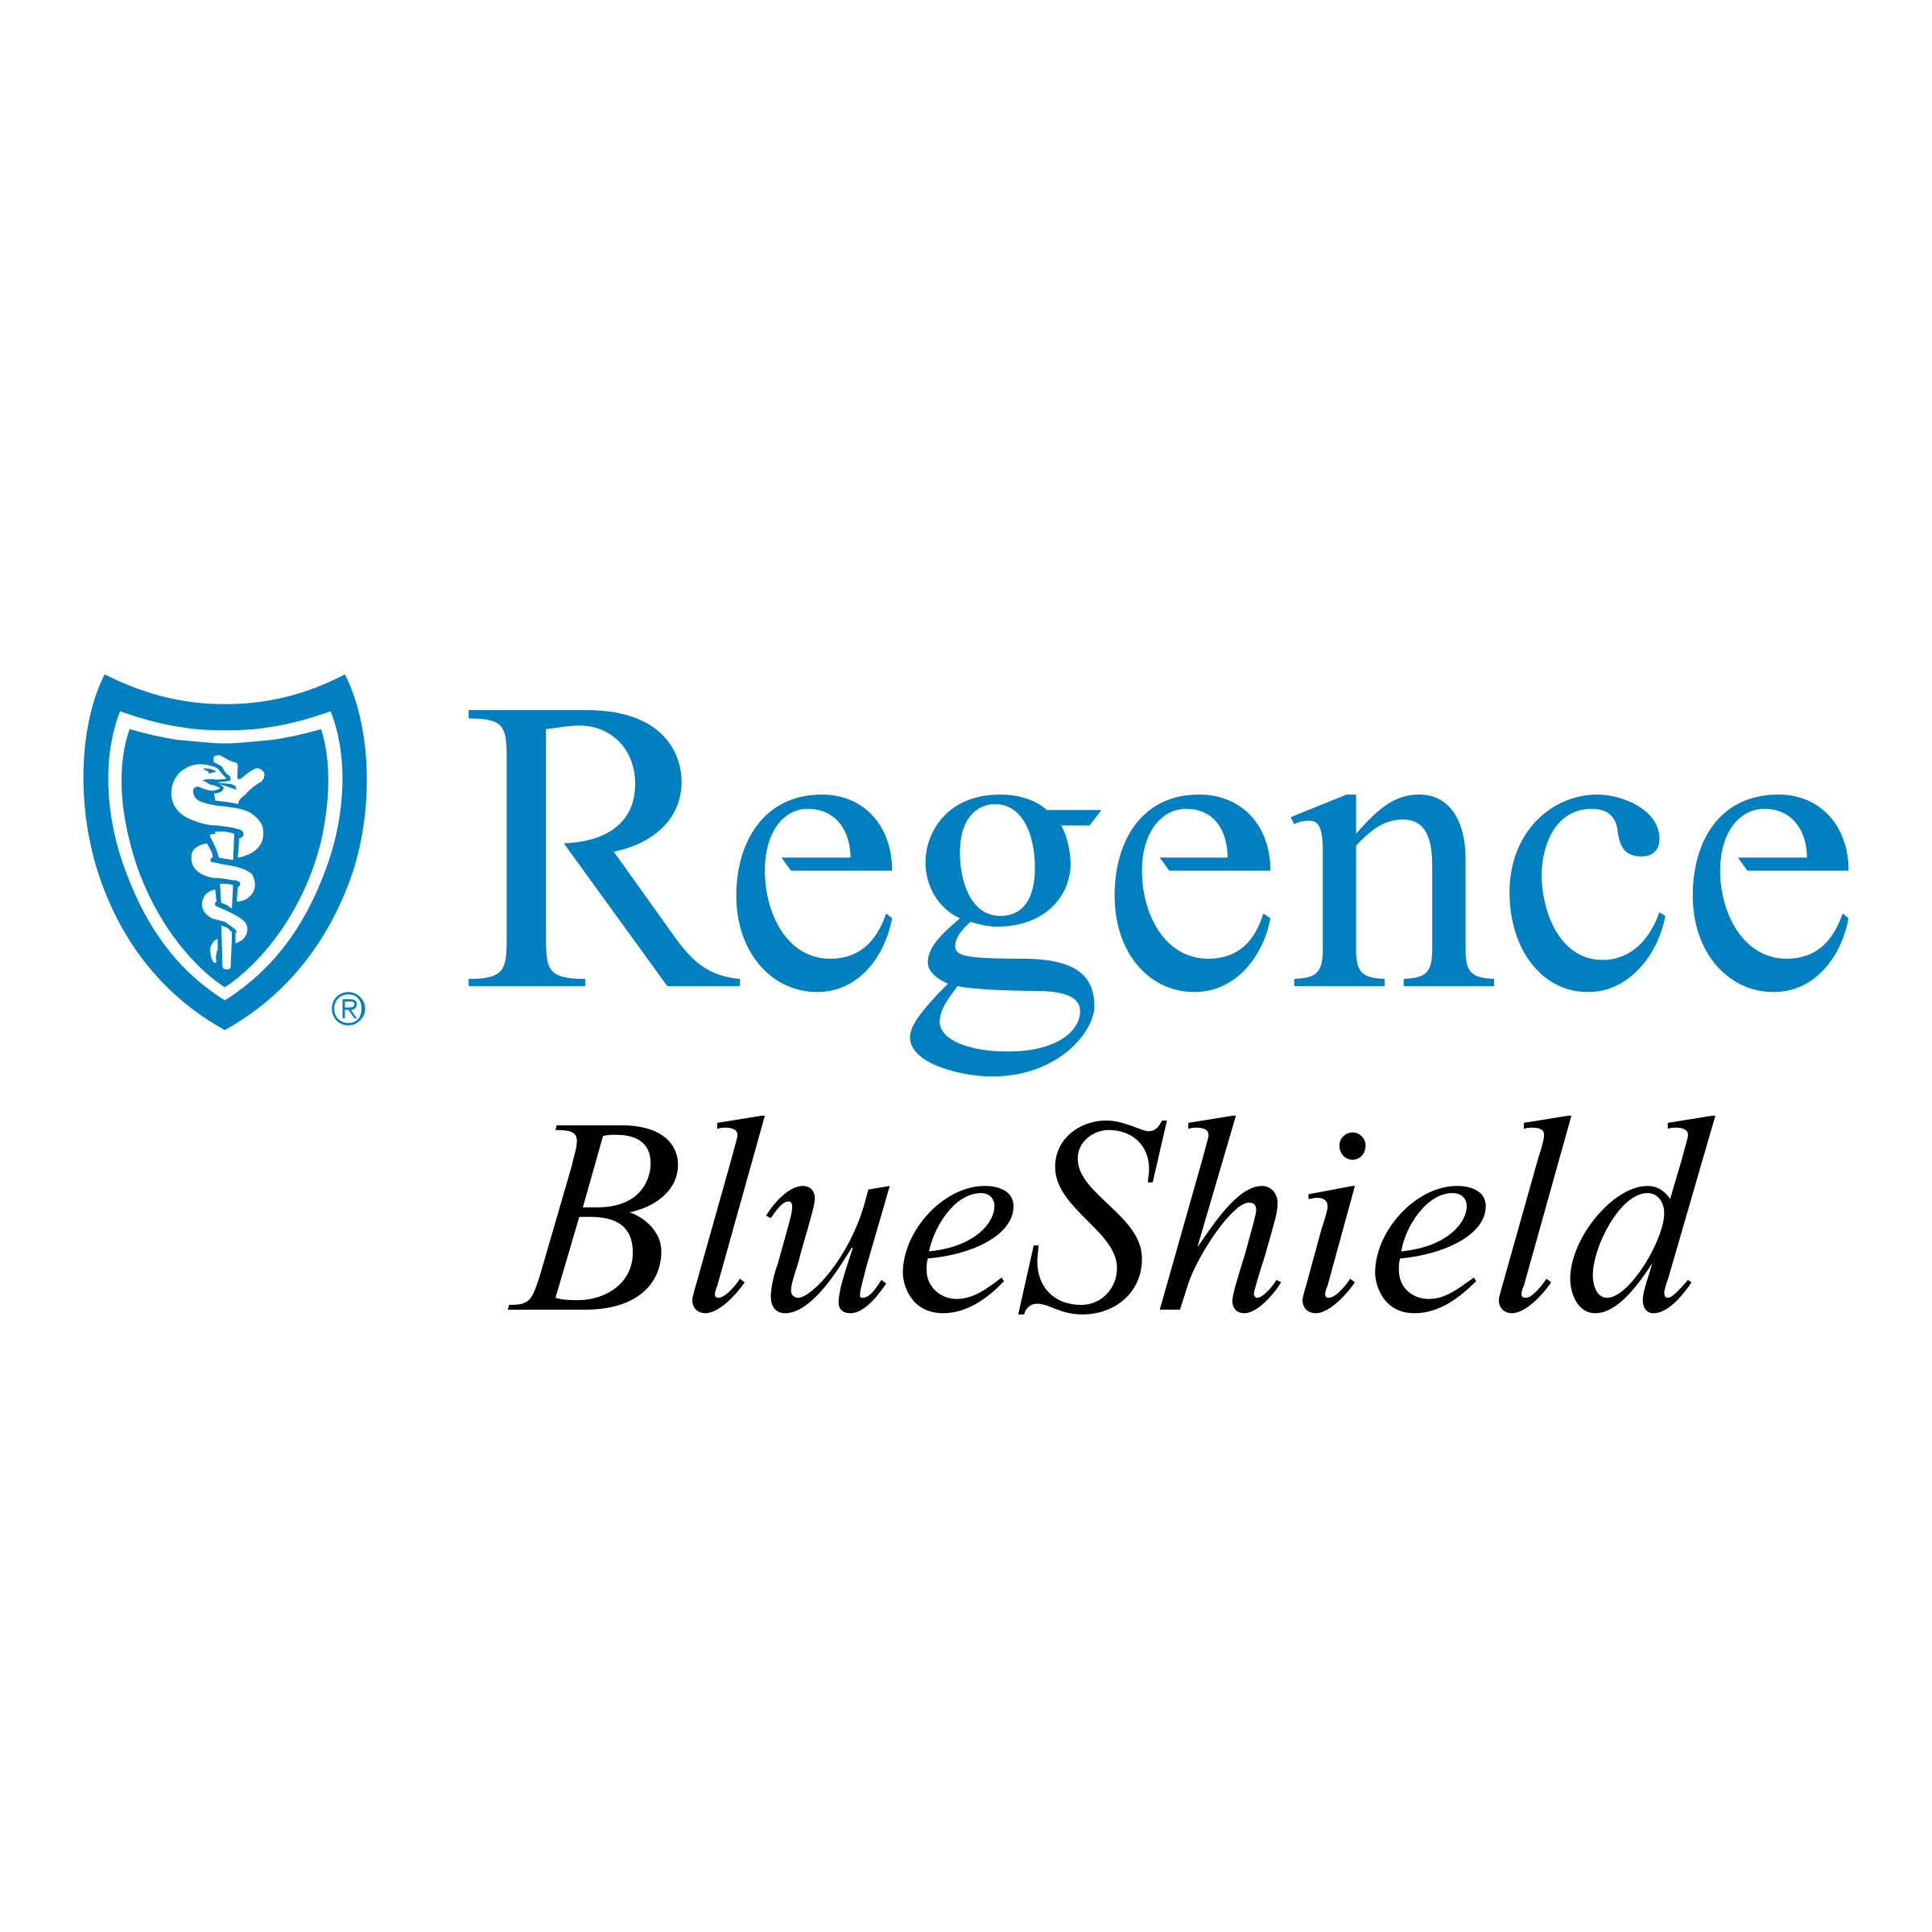 regence-blueshield-logo-png-transparent.png